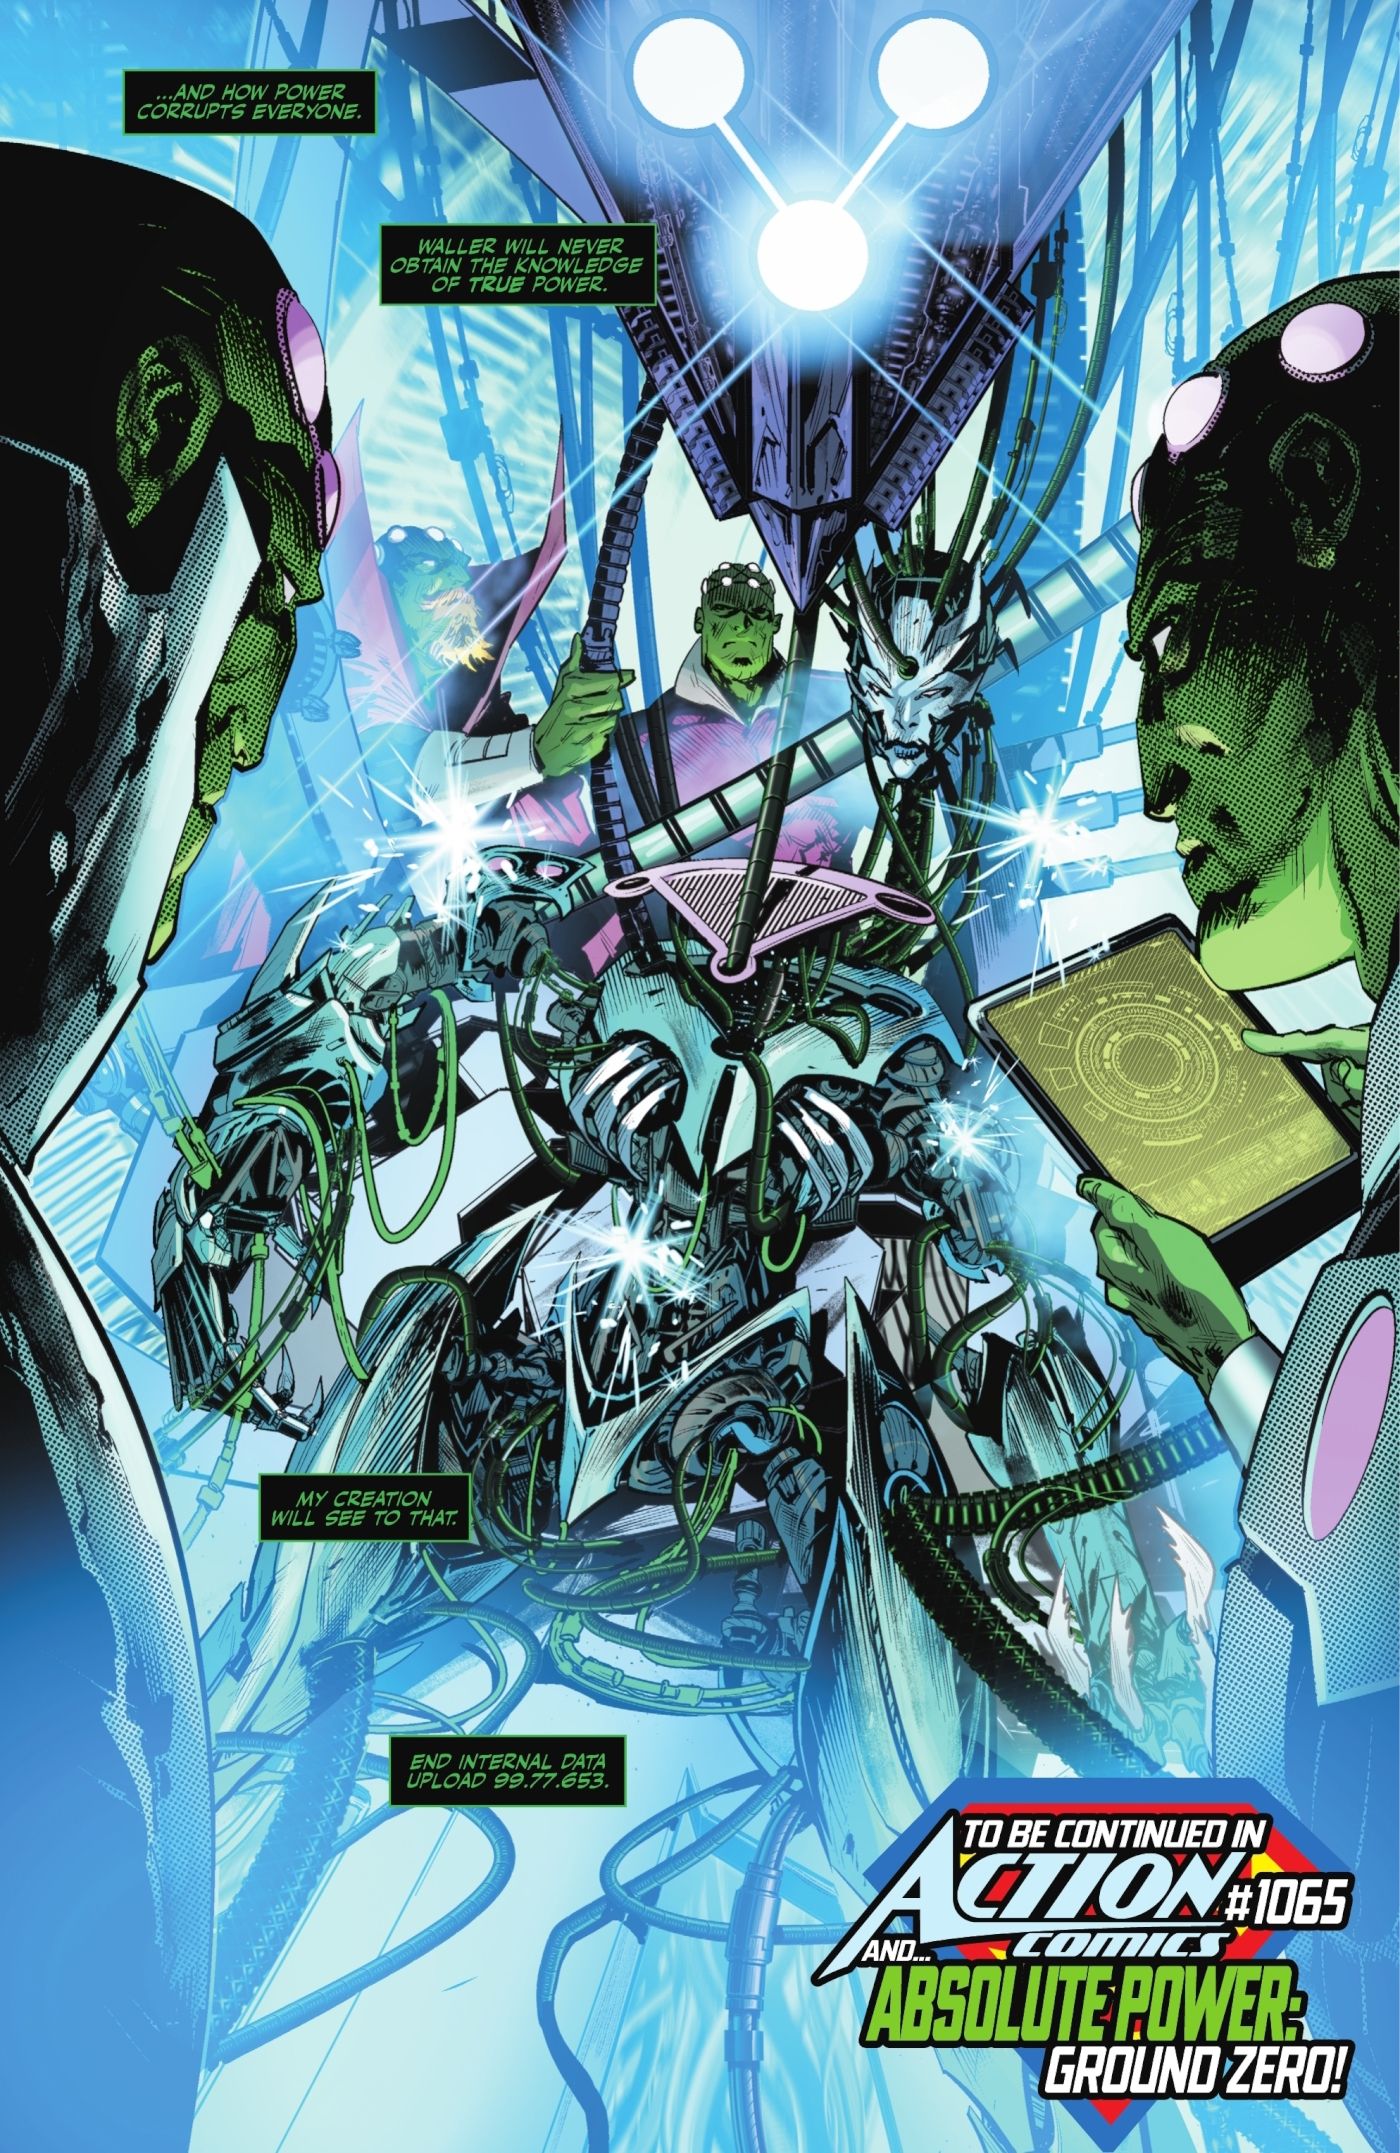 Página de quadrinhos: Brainiac está construindo a rainha Brainiac